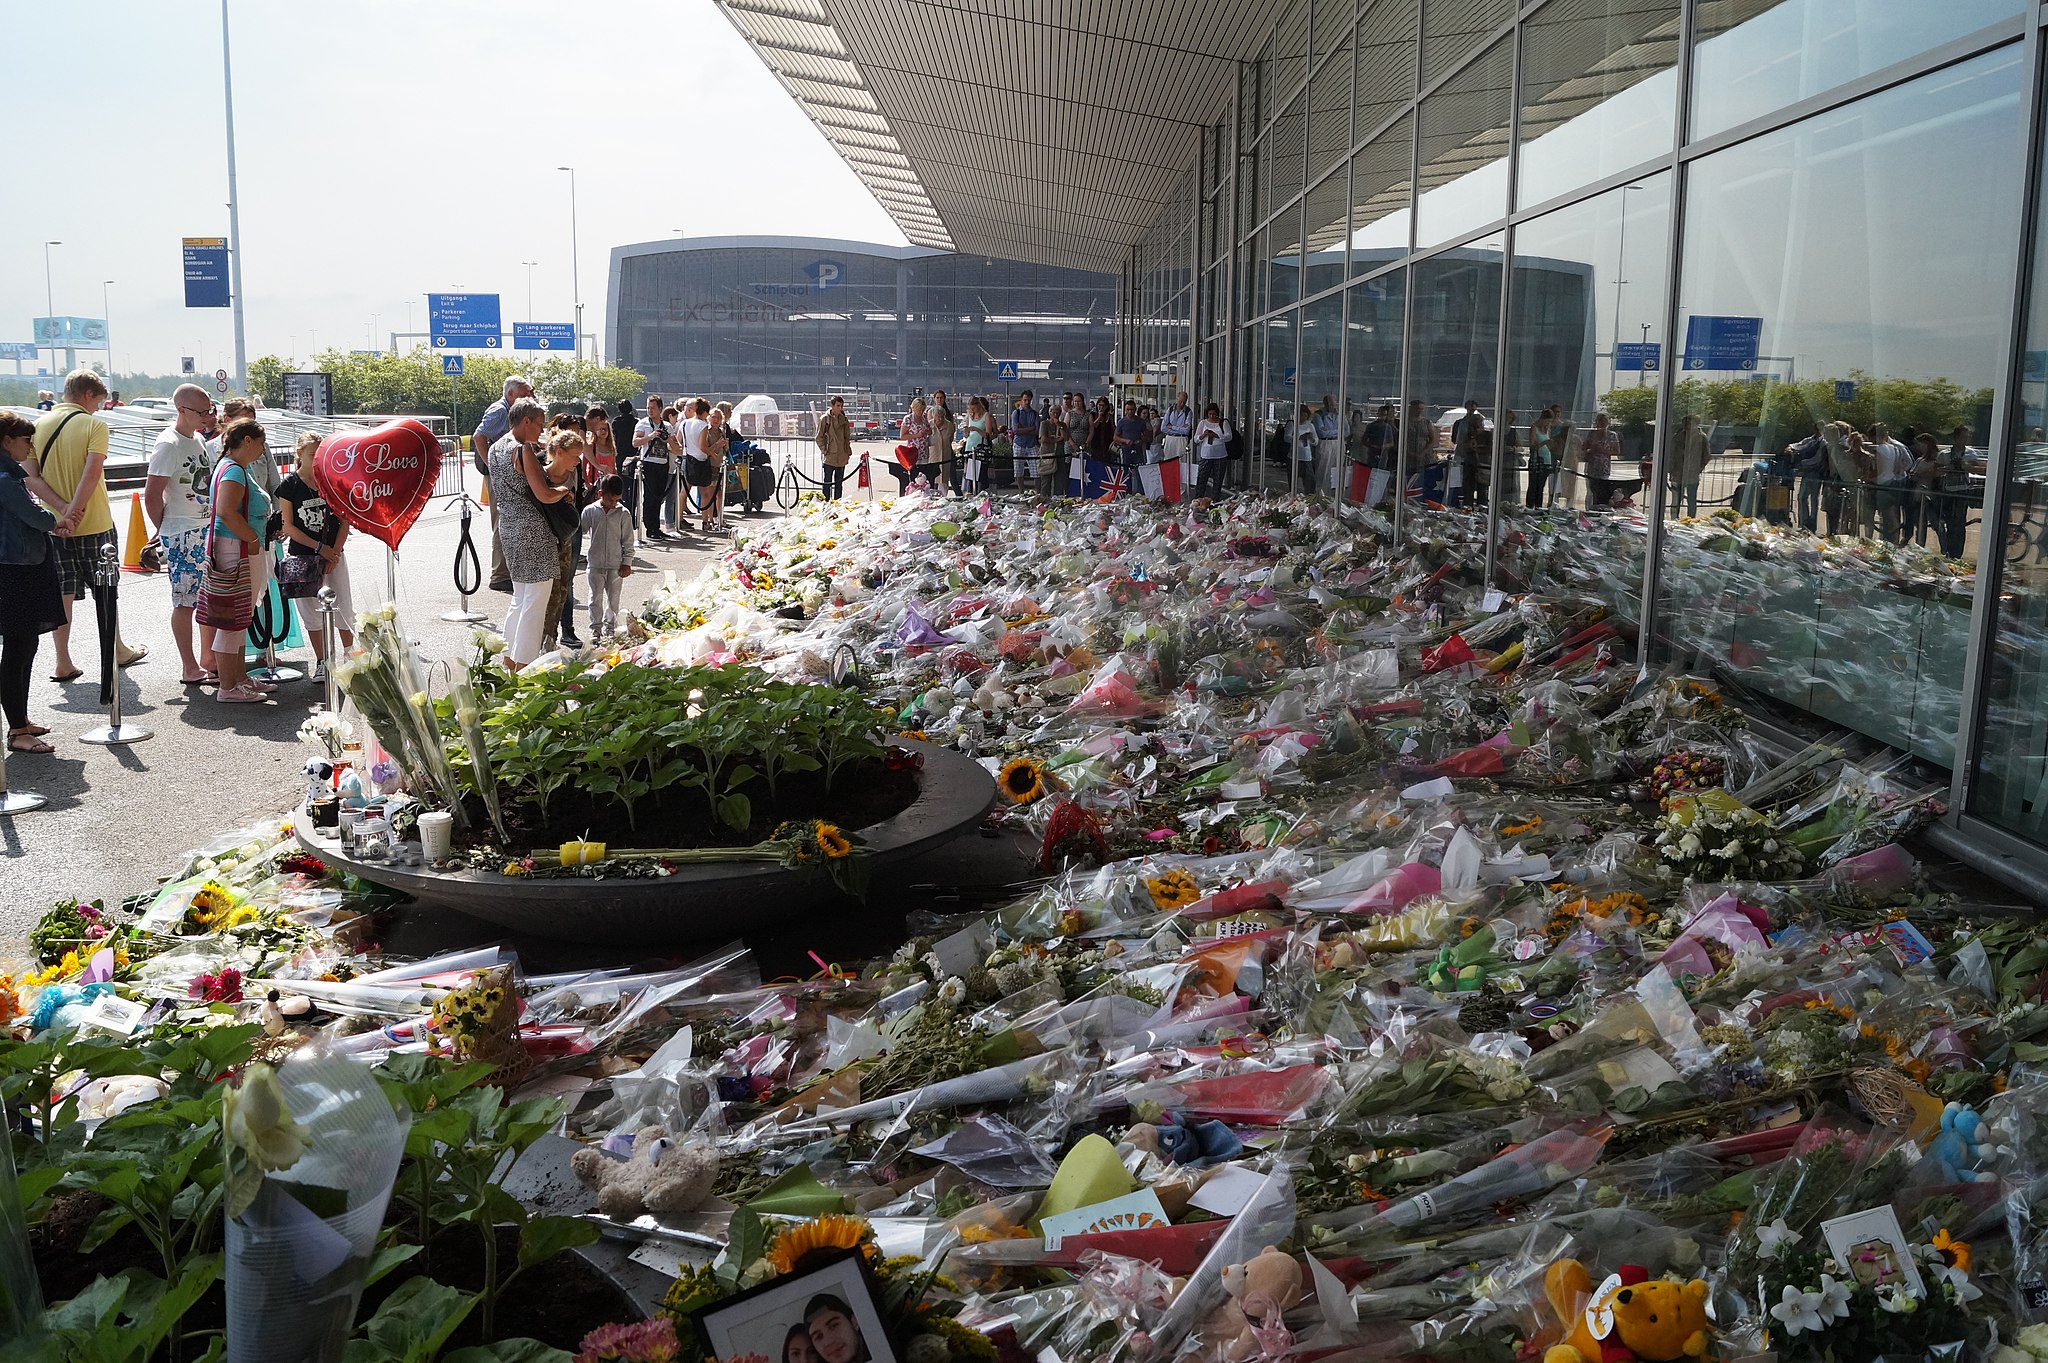 Il mare di fiori in aeroporto per le vittime del disastro del volo MH17.